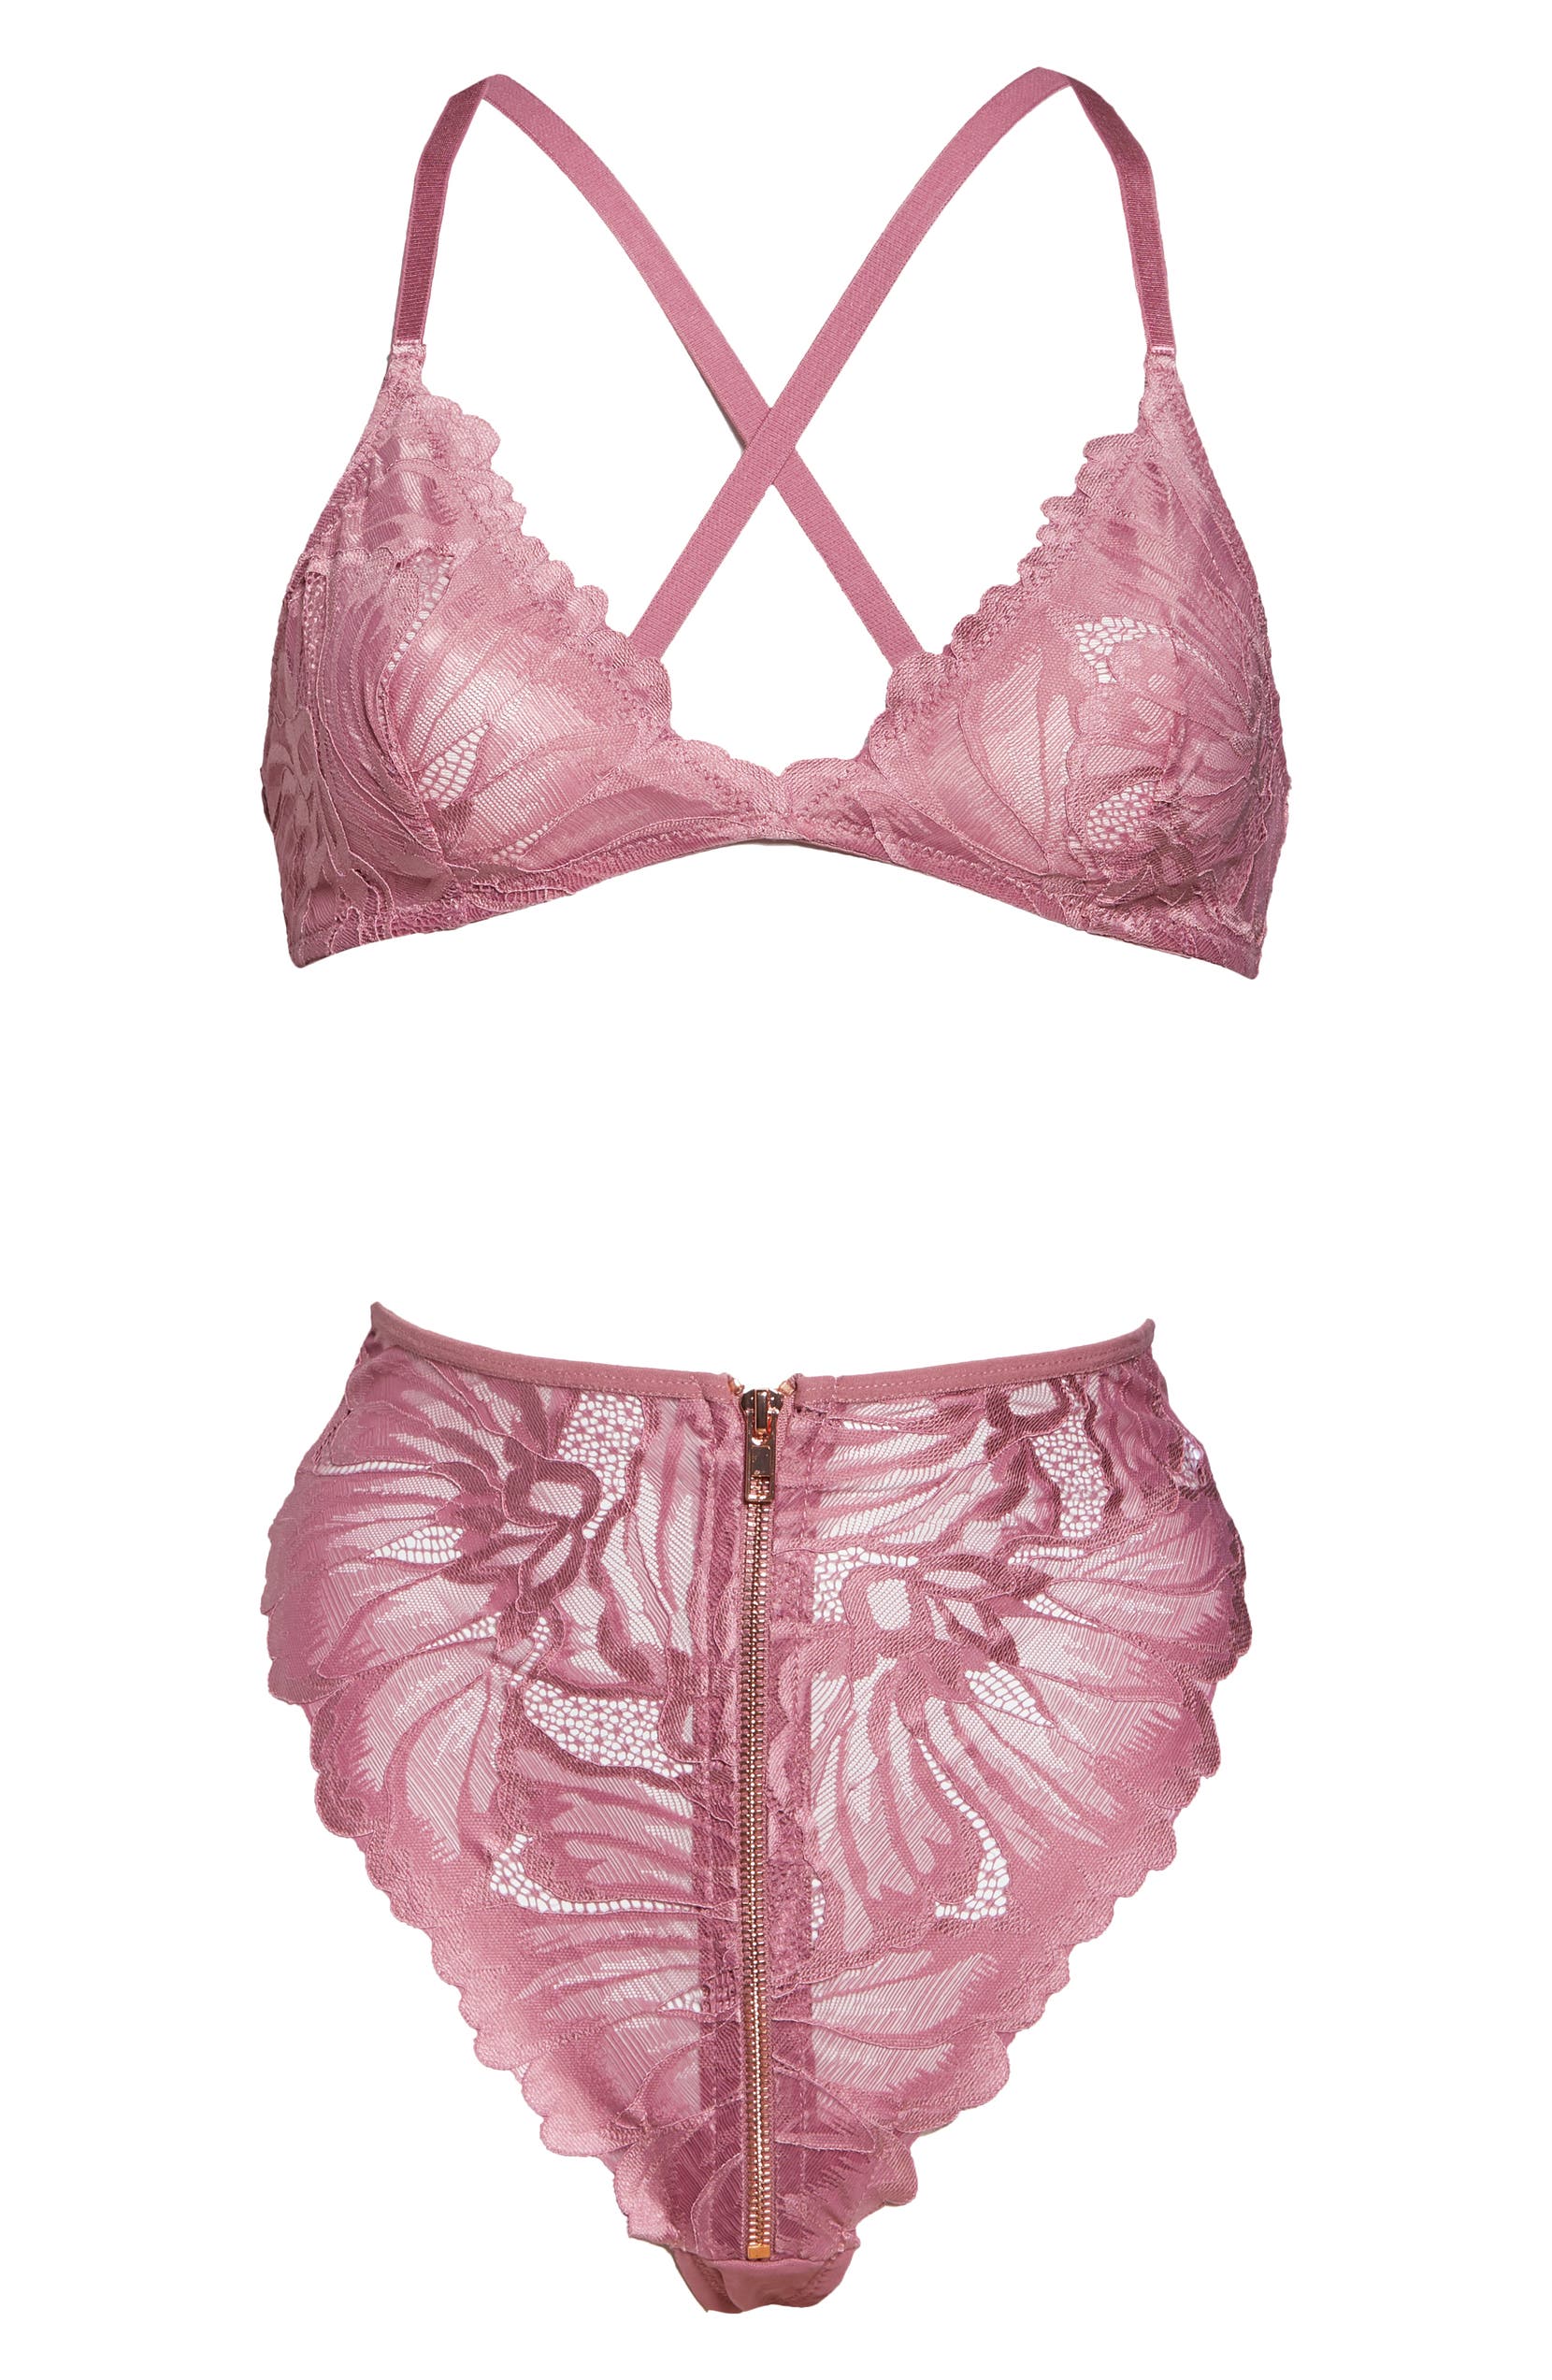 OH LA LA CHERI Floral Lace Bralette & High Waist Panties Set, Alternate, color, HEATHER ROSE